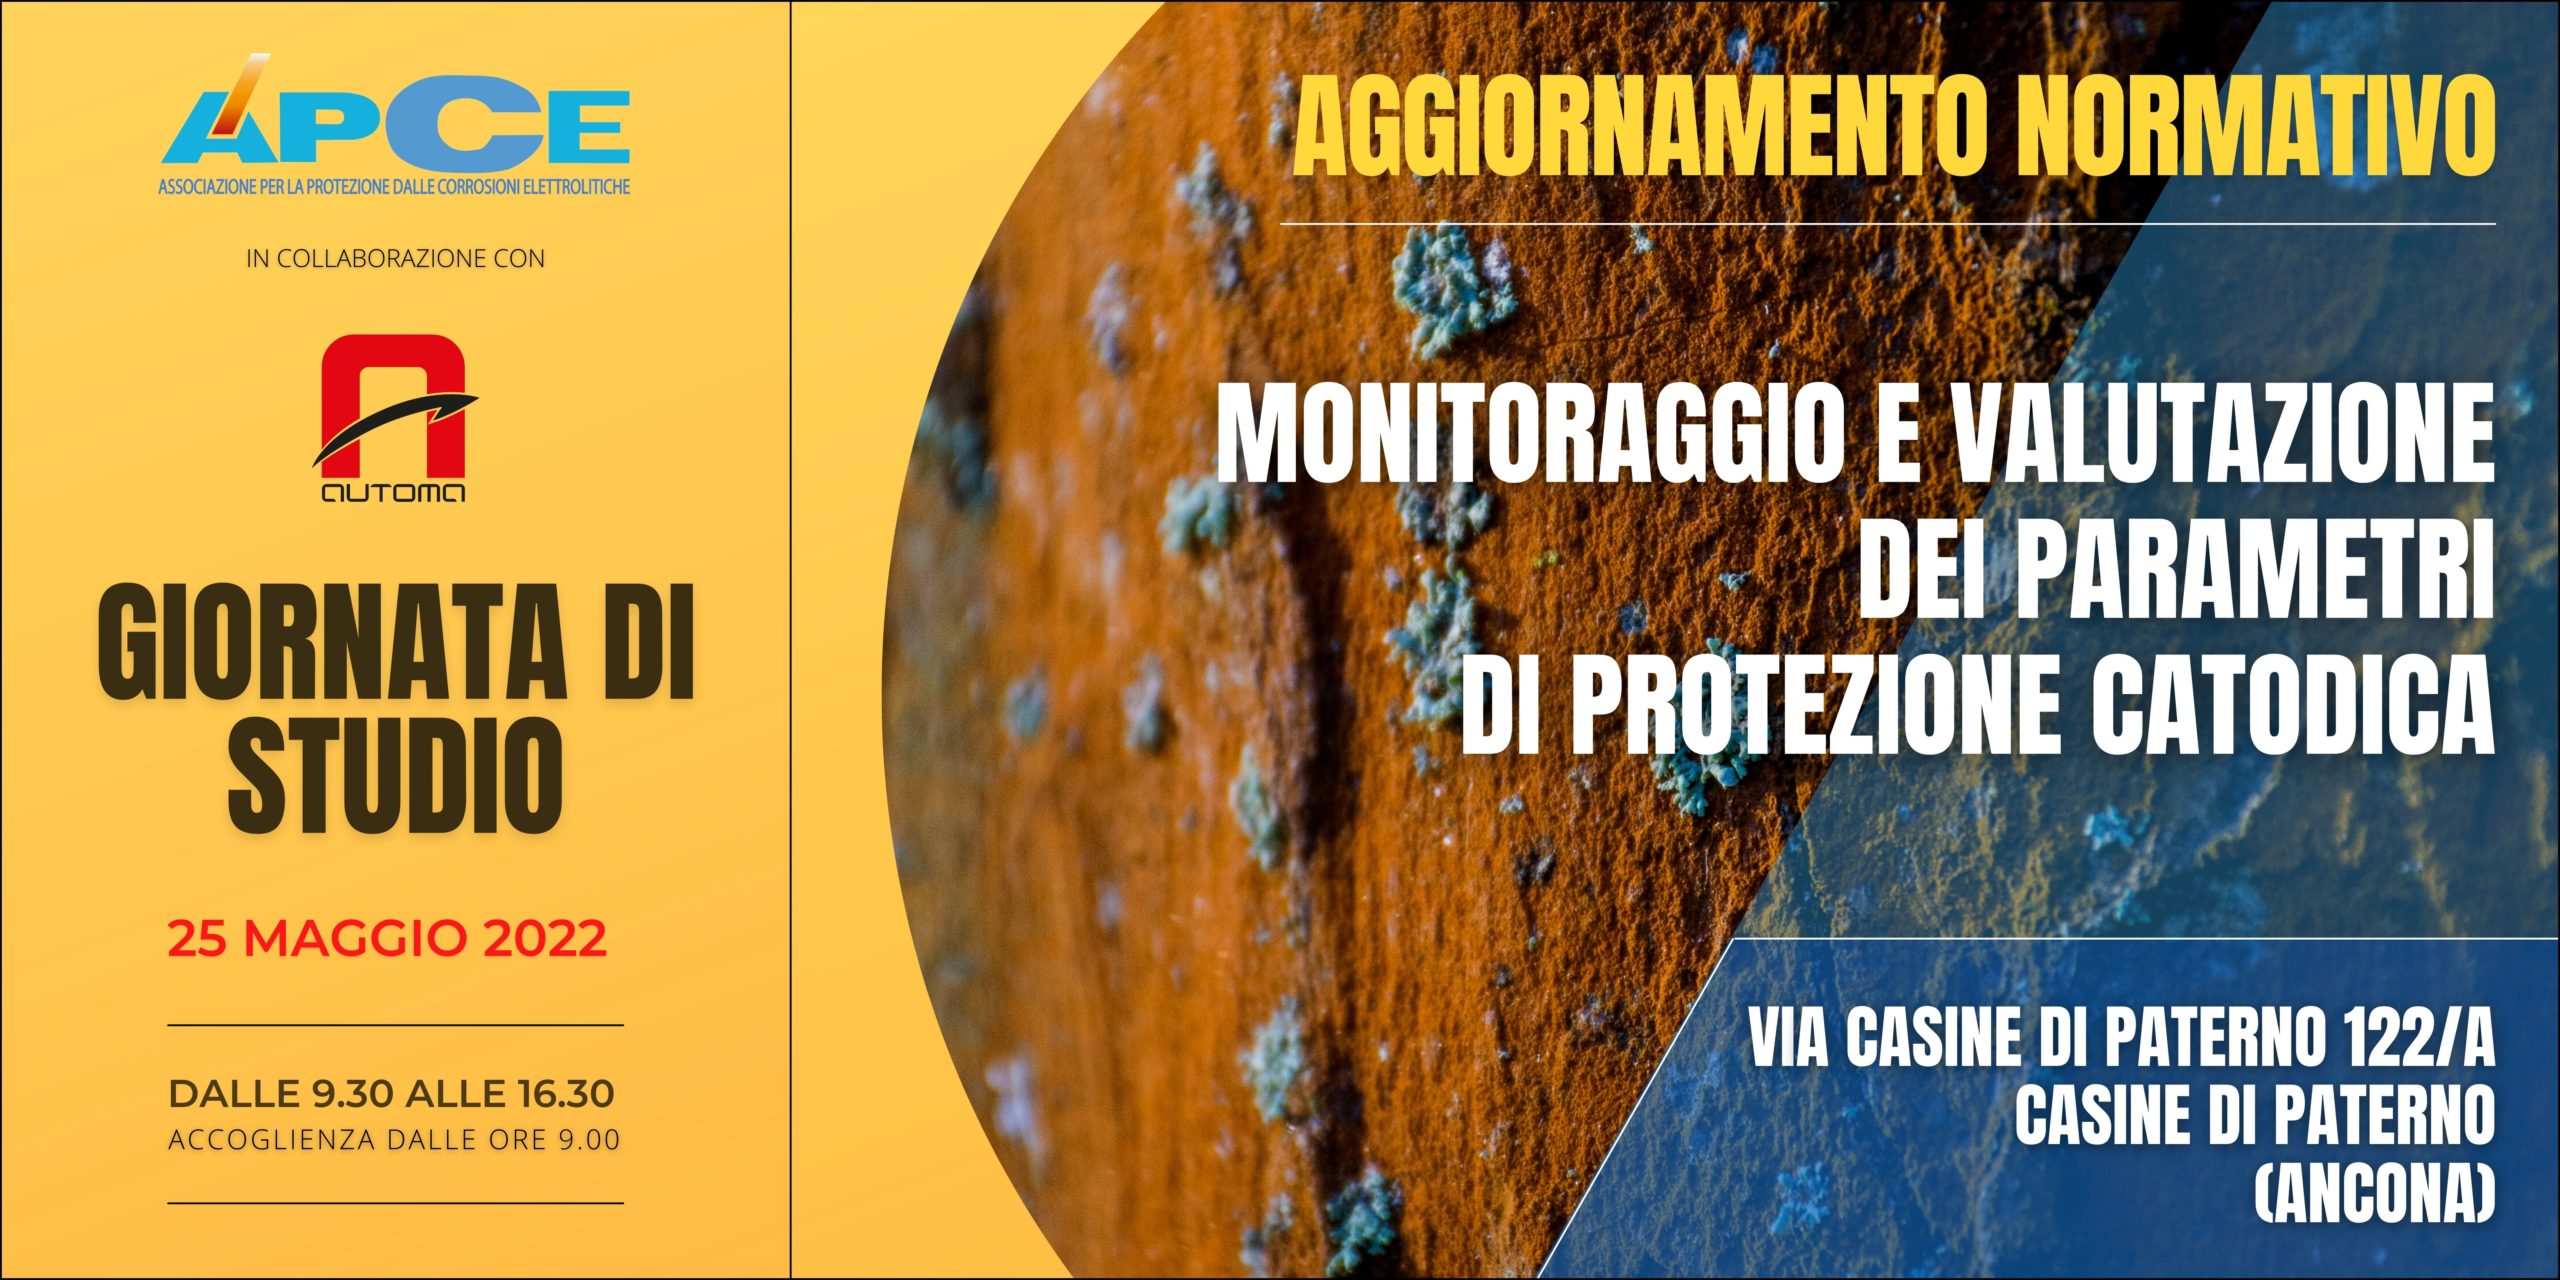 Featured image for “Aggiornamento Normativo, Monitoraggio e Valutazione dei Parametri di Protezione Catodica”